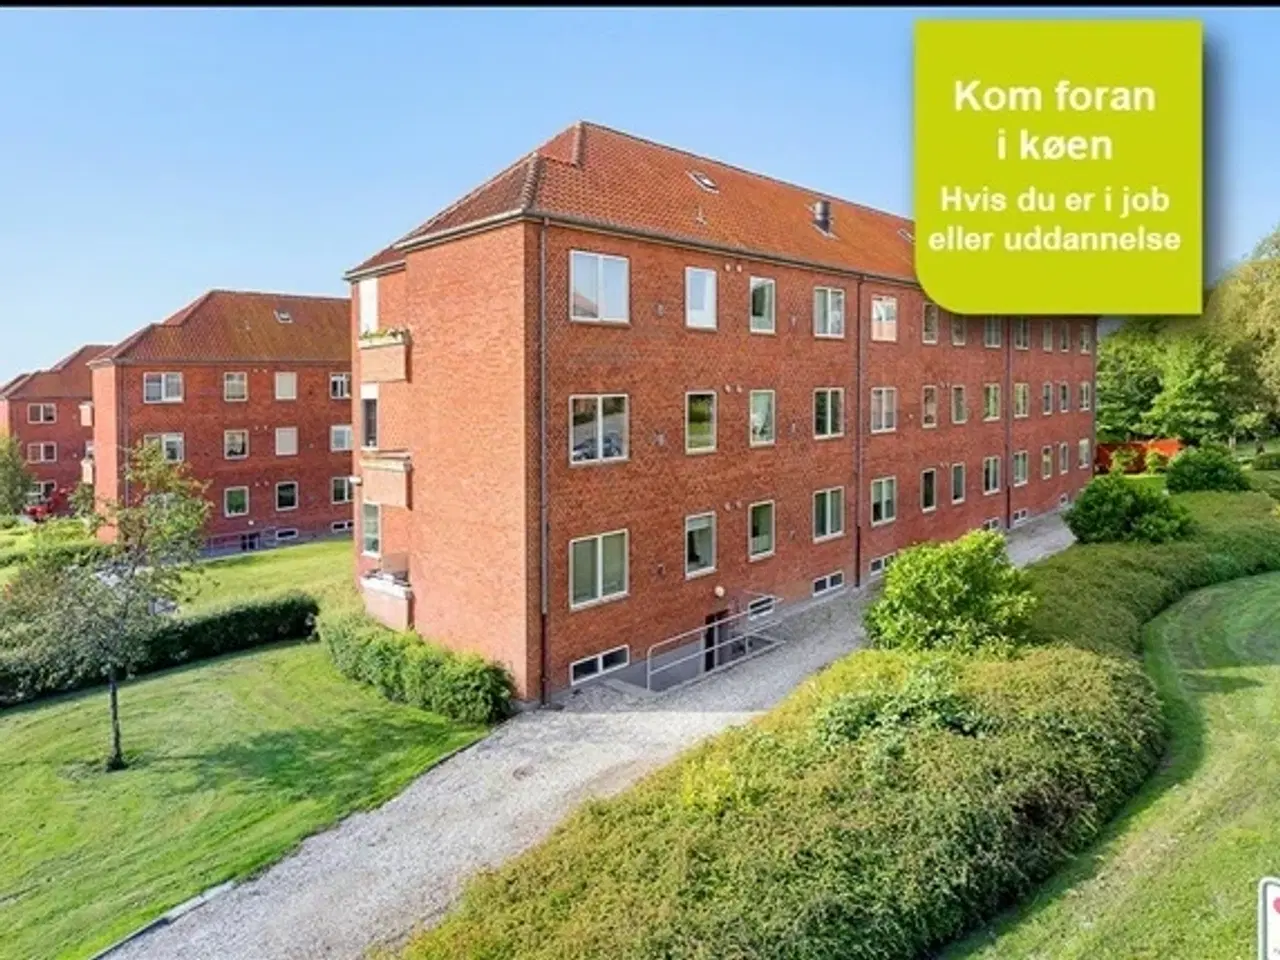 Billede 1 - Stadfeldtsvej, 60 m2, 2 værelser, 3.809 kr., Randers NØ, Aarhus